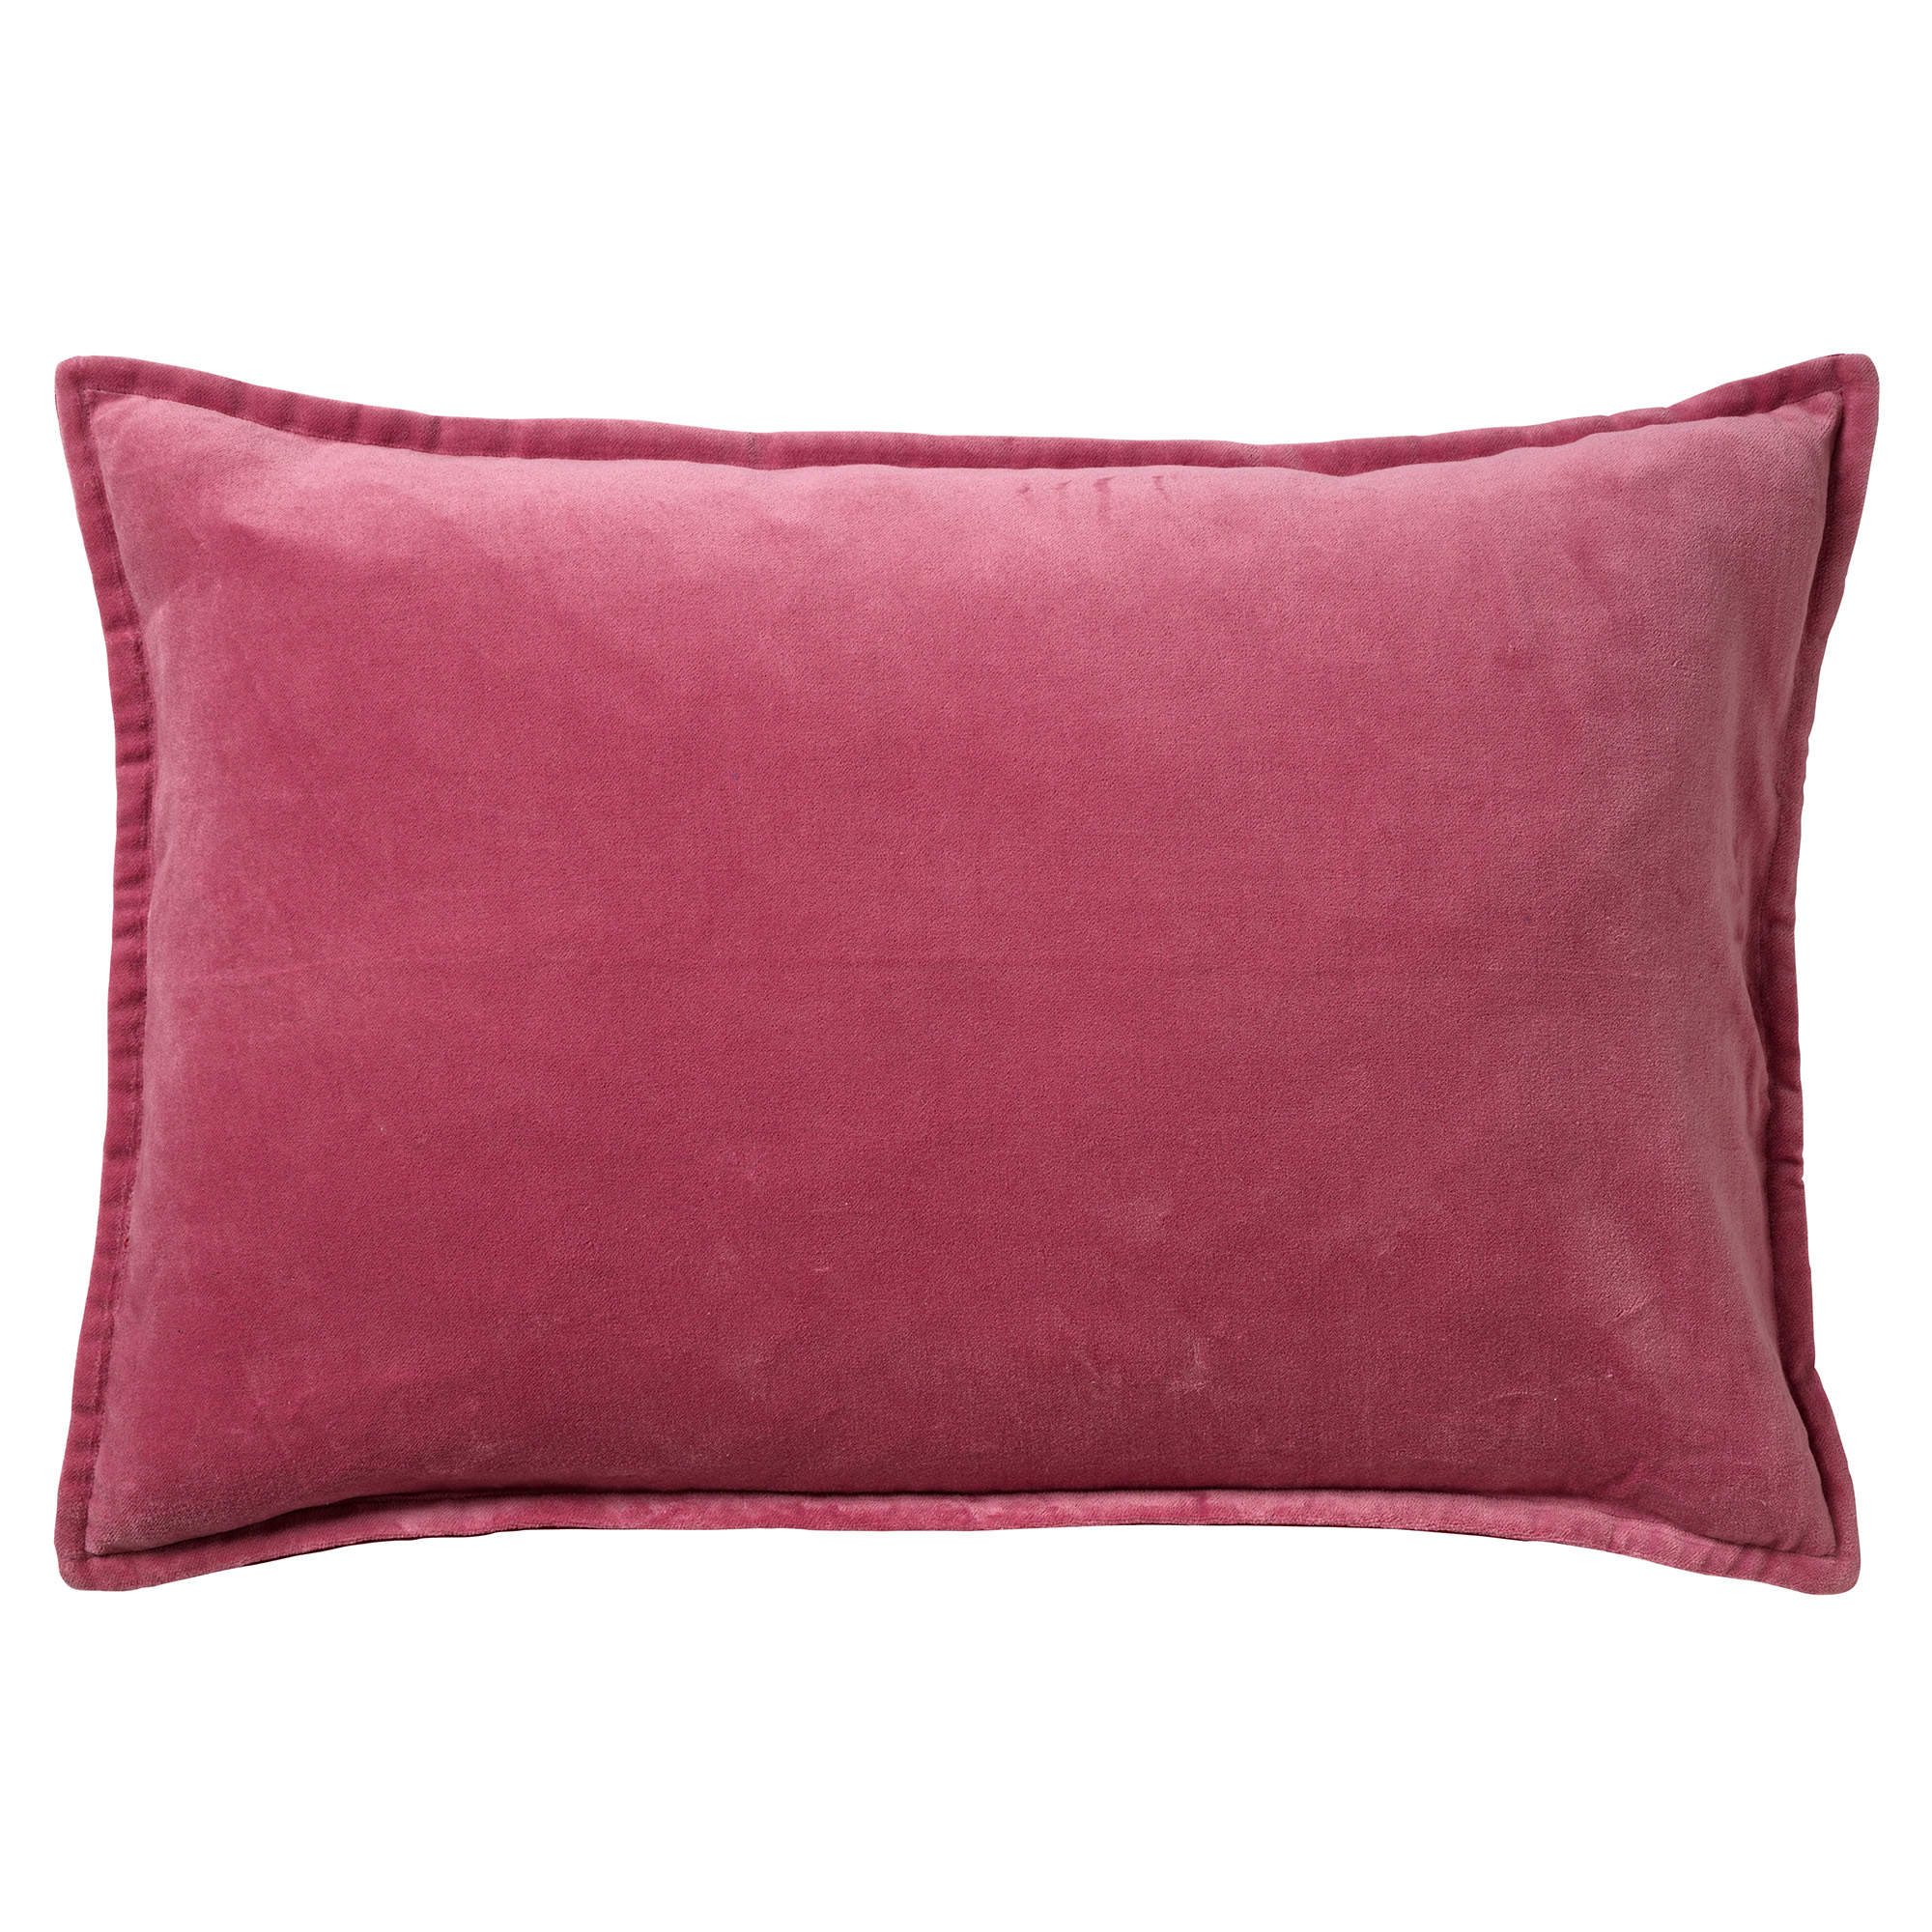 FAY - Kussenhoes 40x60 cm - velvet met 2 kleuren - Red Plum + Muted Clay - roze